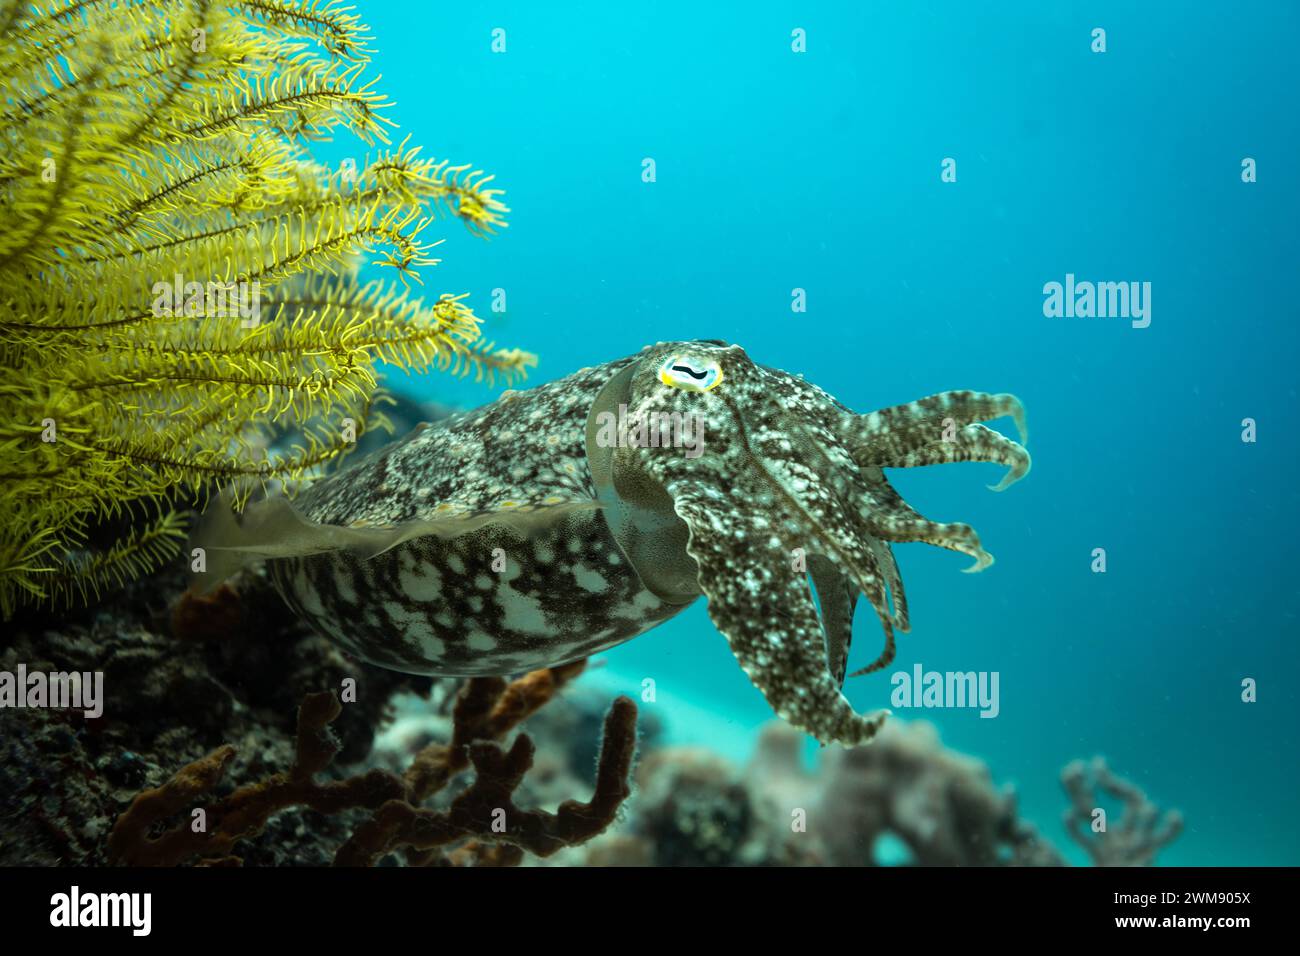 Cuddlefish, Sepiida, nuota lungo la barriera corallina tropicale con camuffamento marrone e bianco Foto Stock